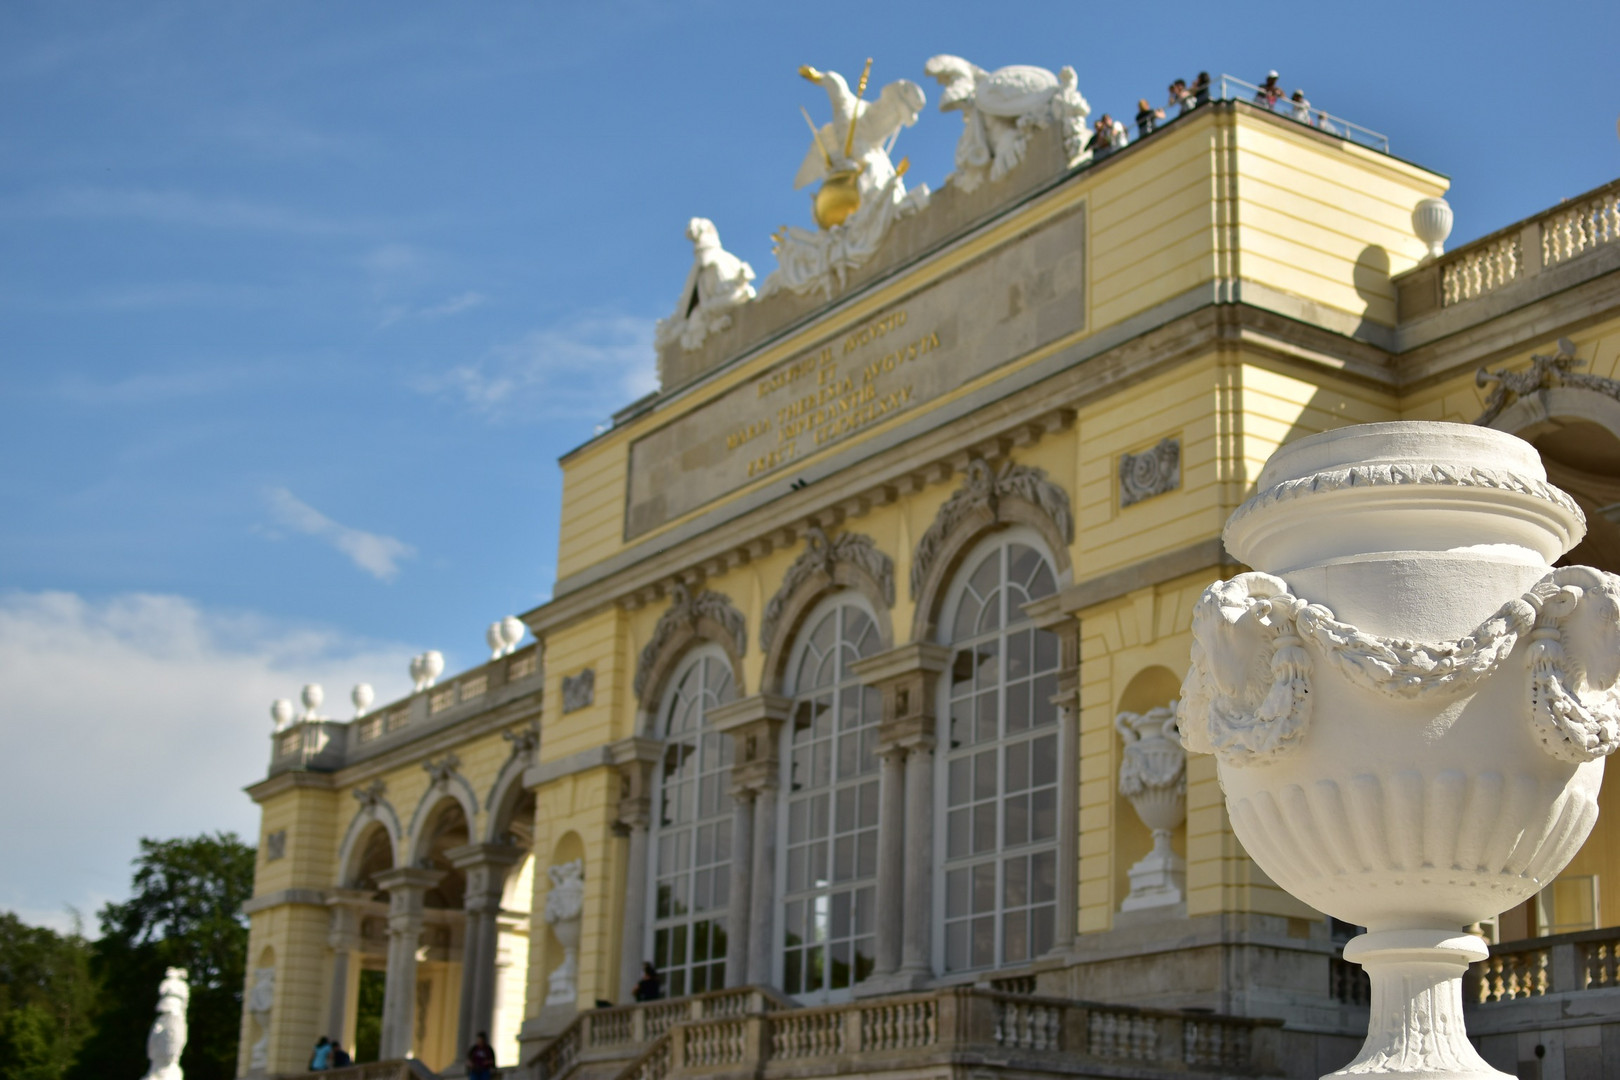 Gloriette Schloss Schönbrunn - Wien